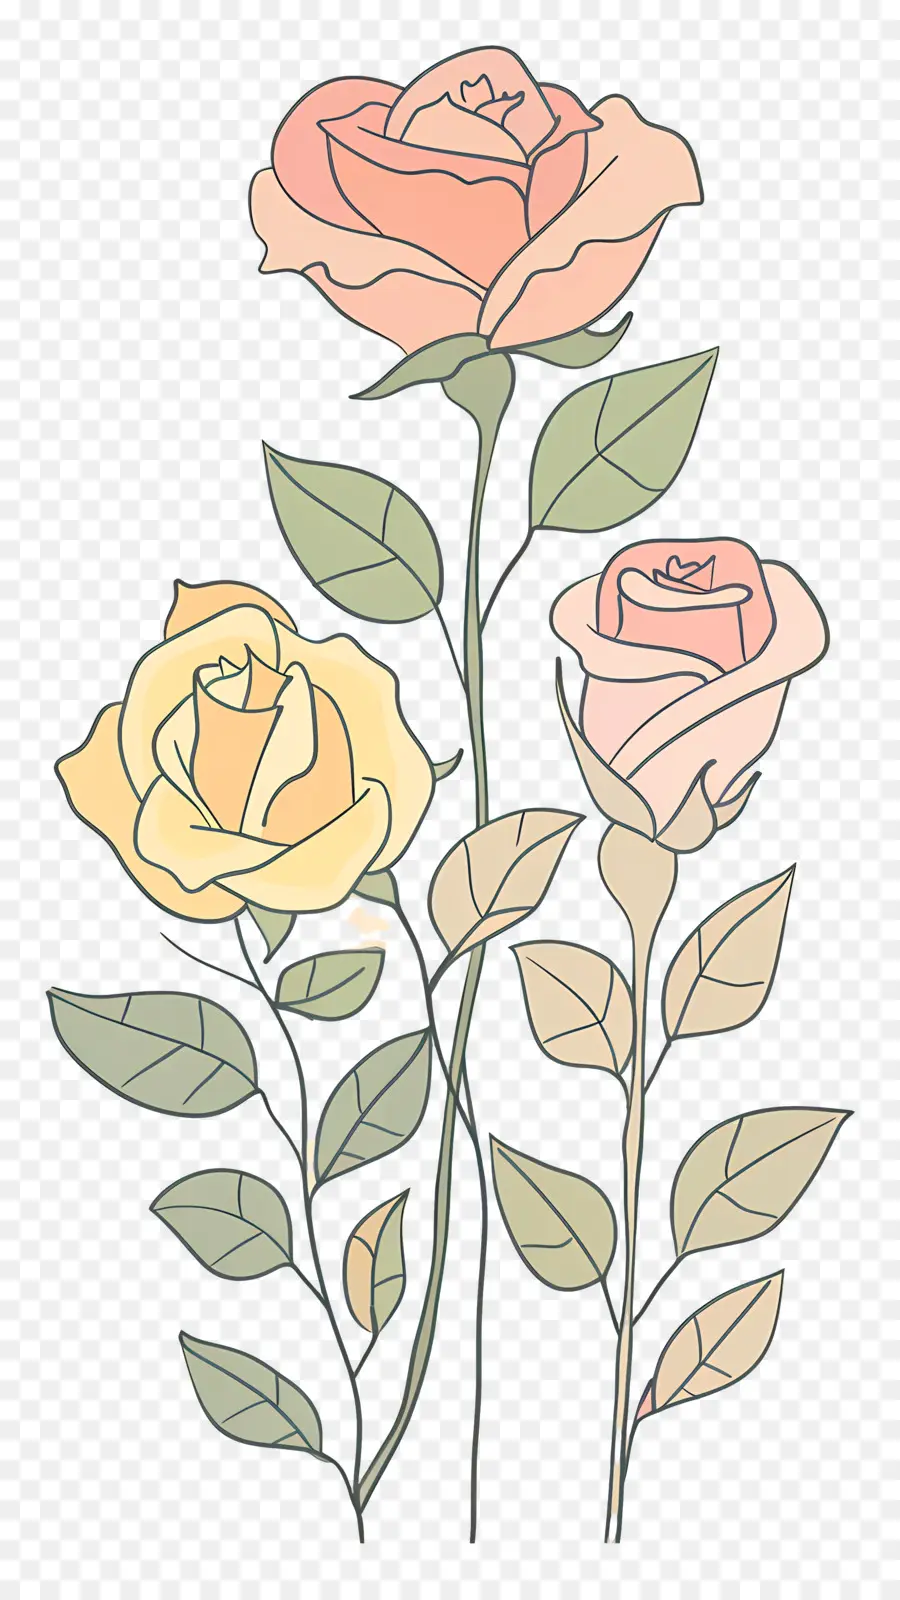 rose rosa - Vivide rose rosa e gialle sullo stelo